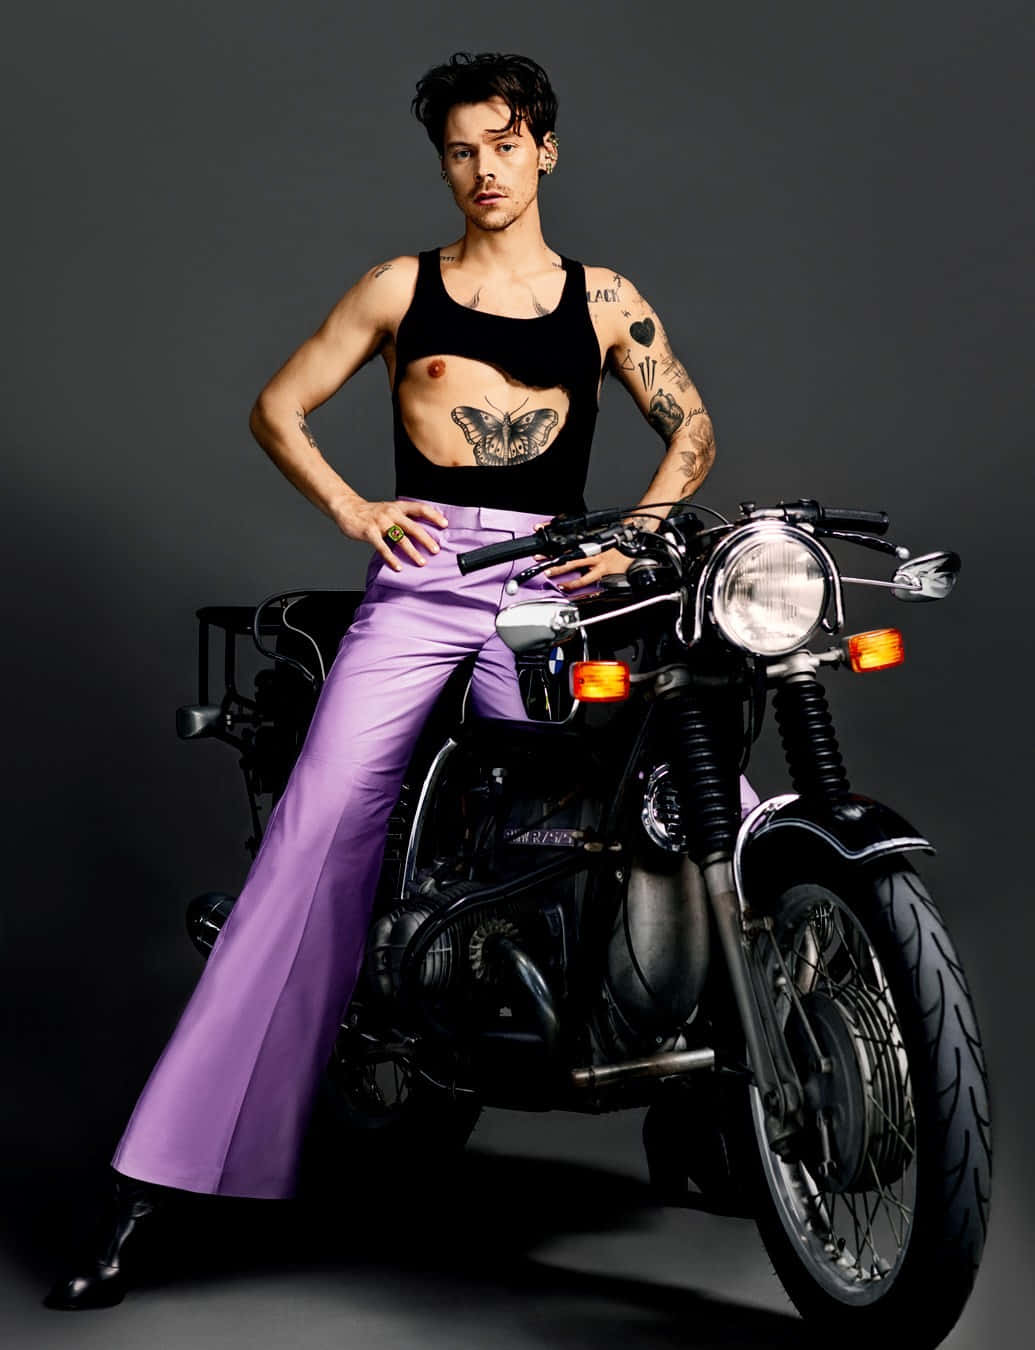 Einefrau Mit Tattoos Posiert Auf Einem Motorrad.